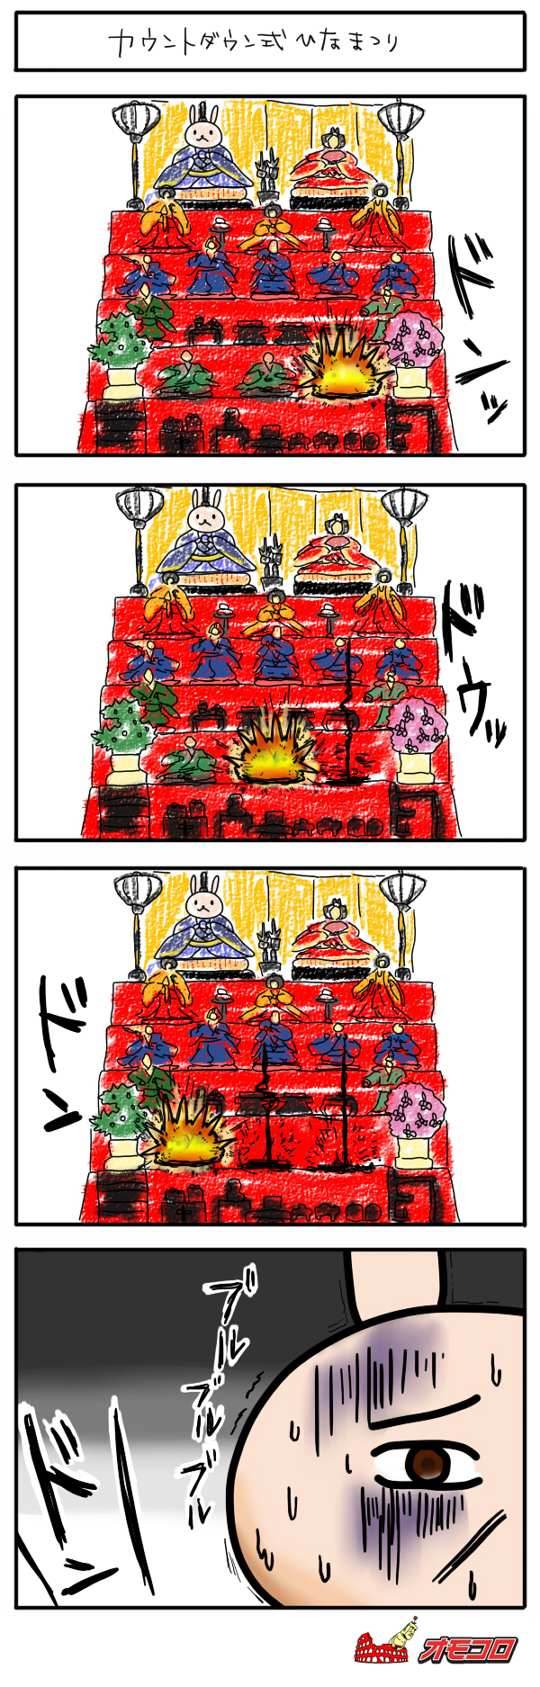 【4コマ漫画】カウントダウン式ひな祭り